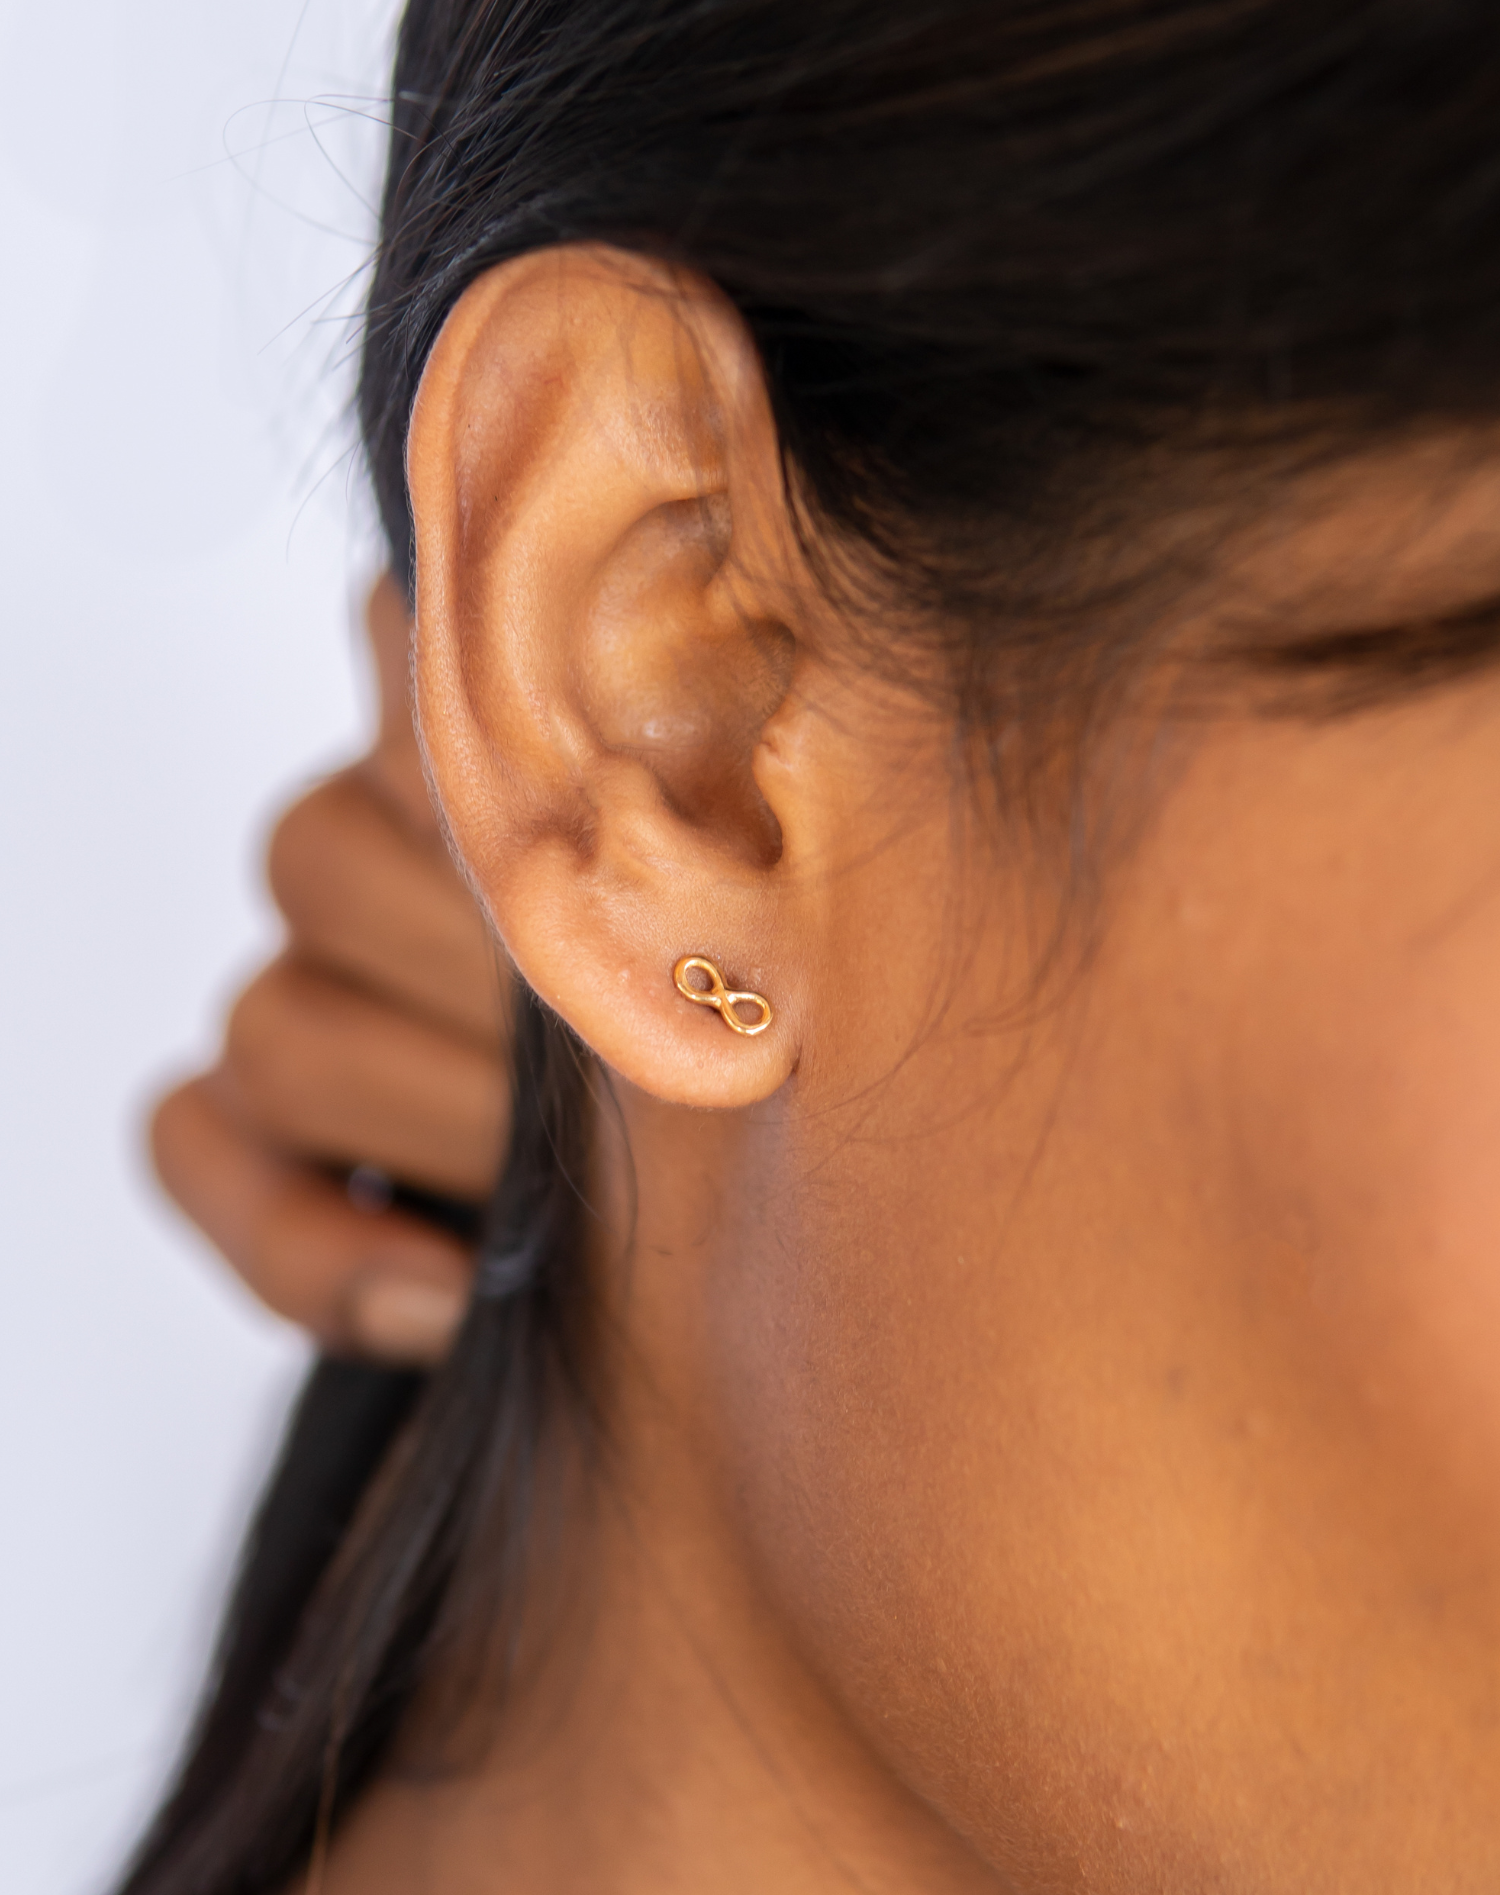 gold finish man earrings stud earrings second hole earrings studs | eBay